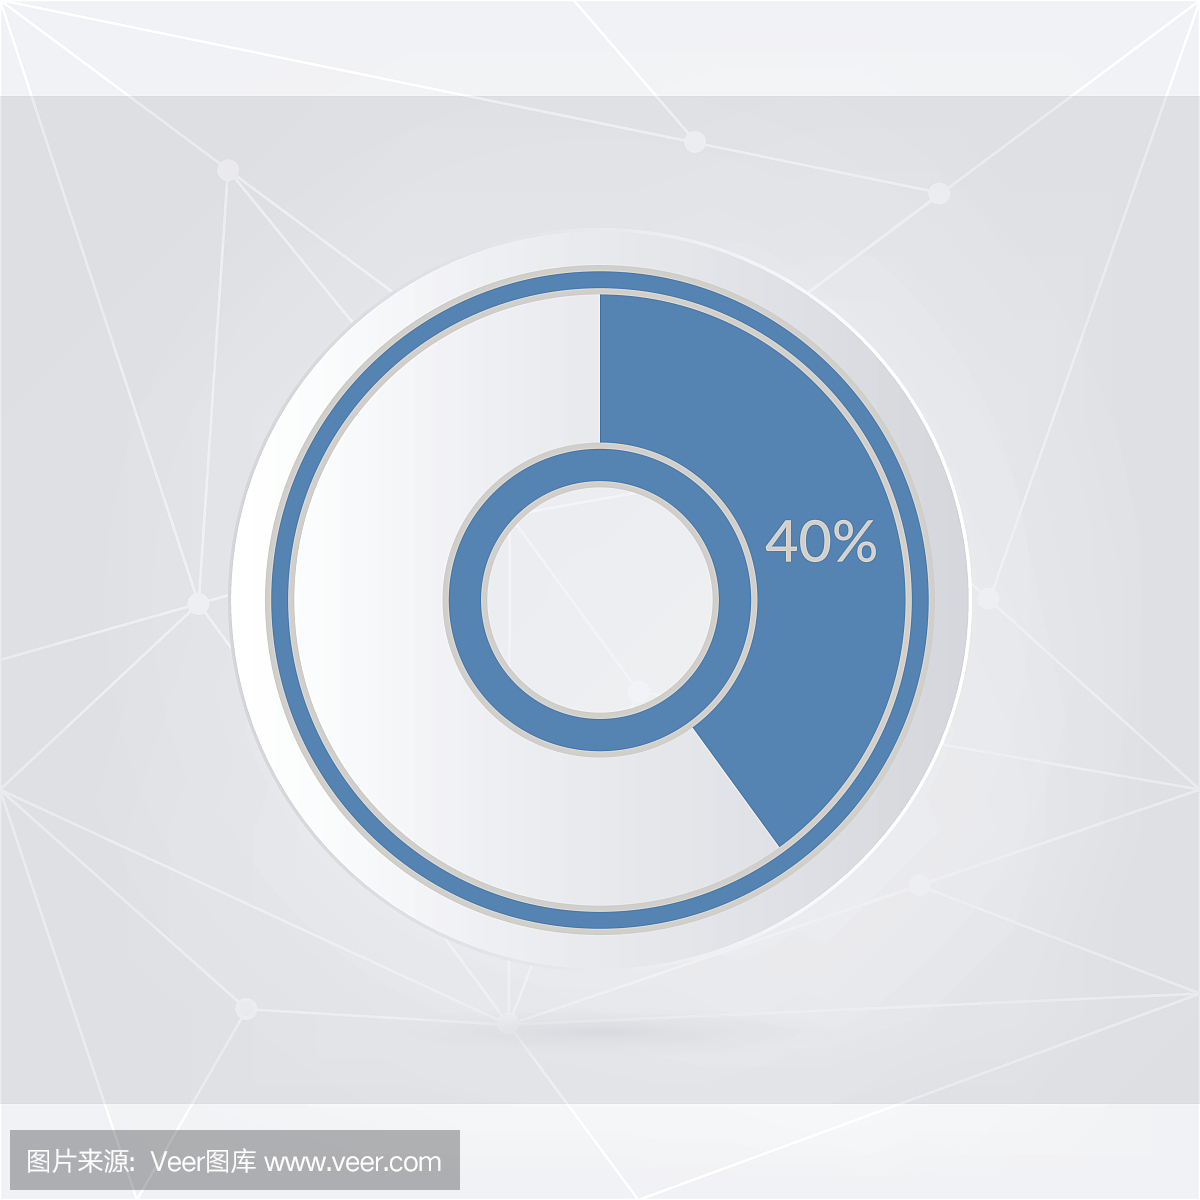 40%的蓝灰色和白色饼图。百分比矢量图表。圆